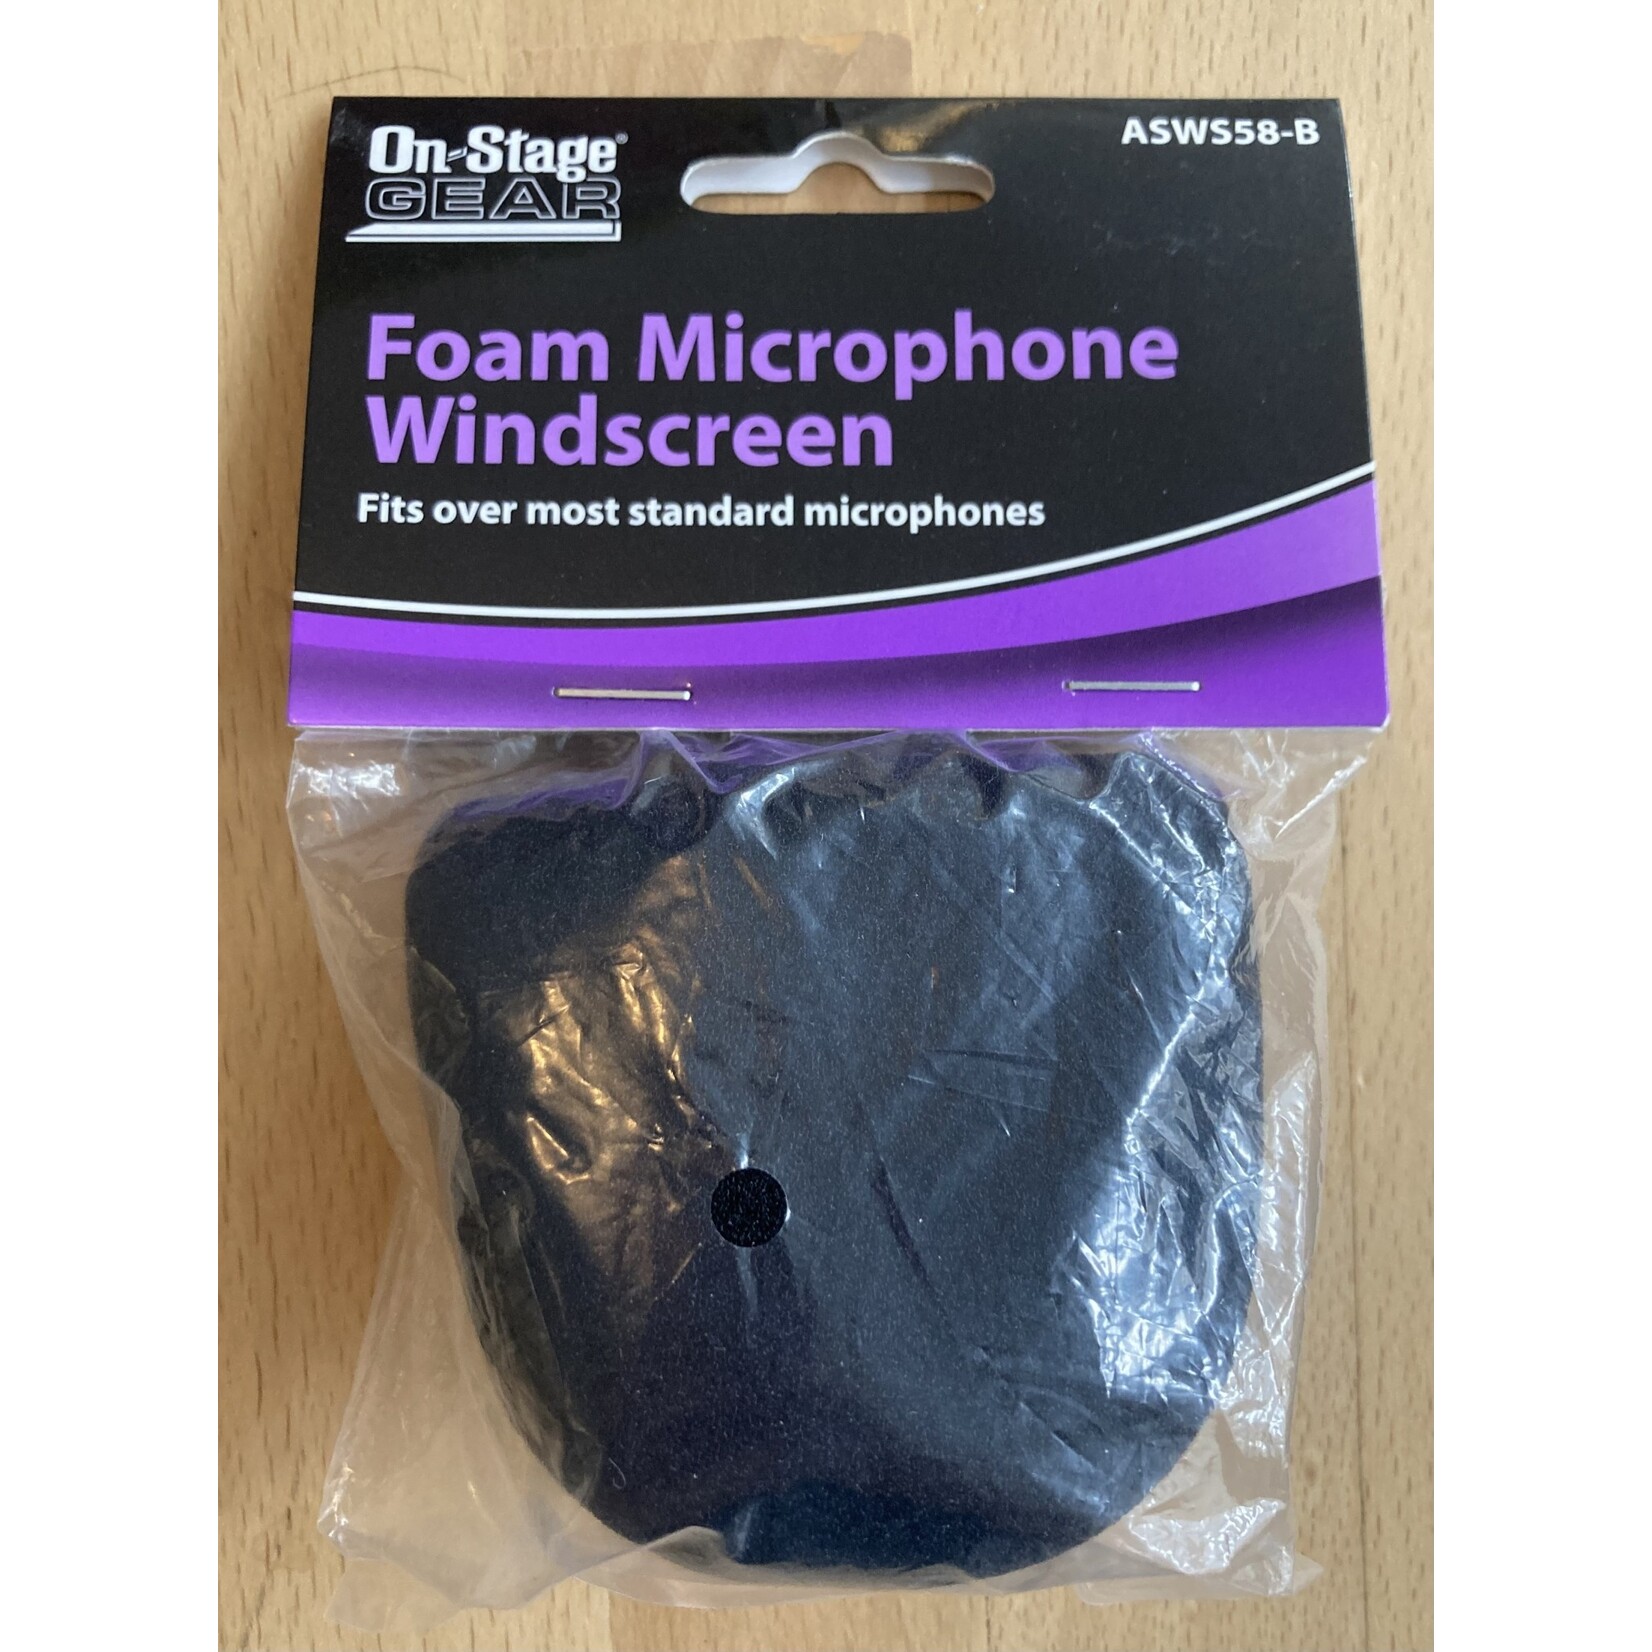 Foam Microphone Windscreen